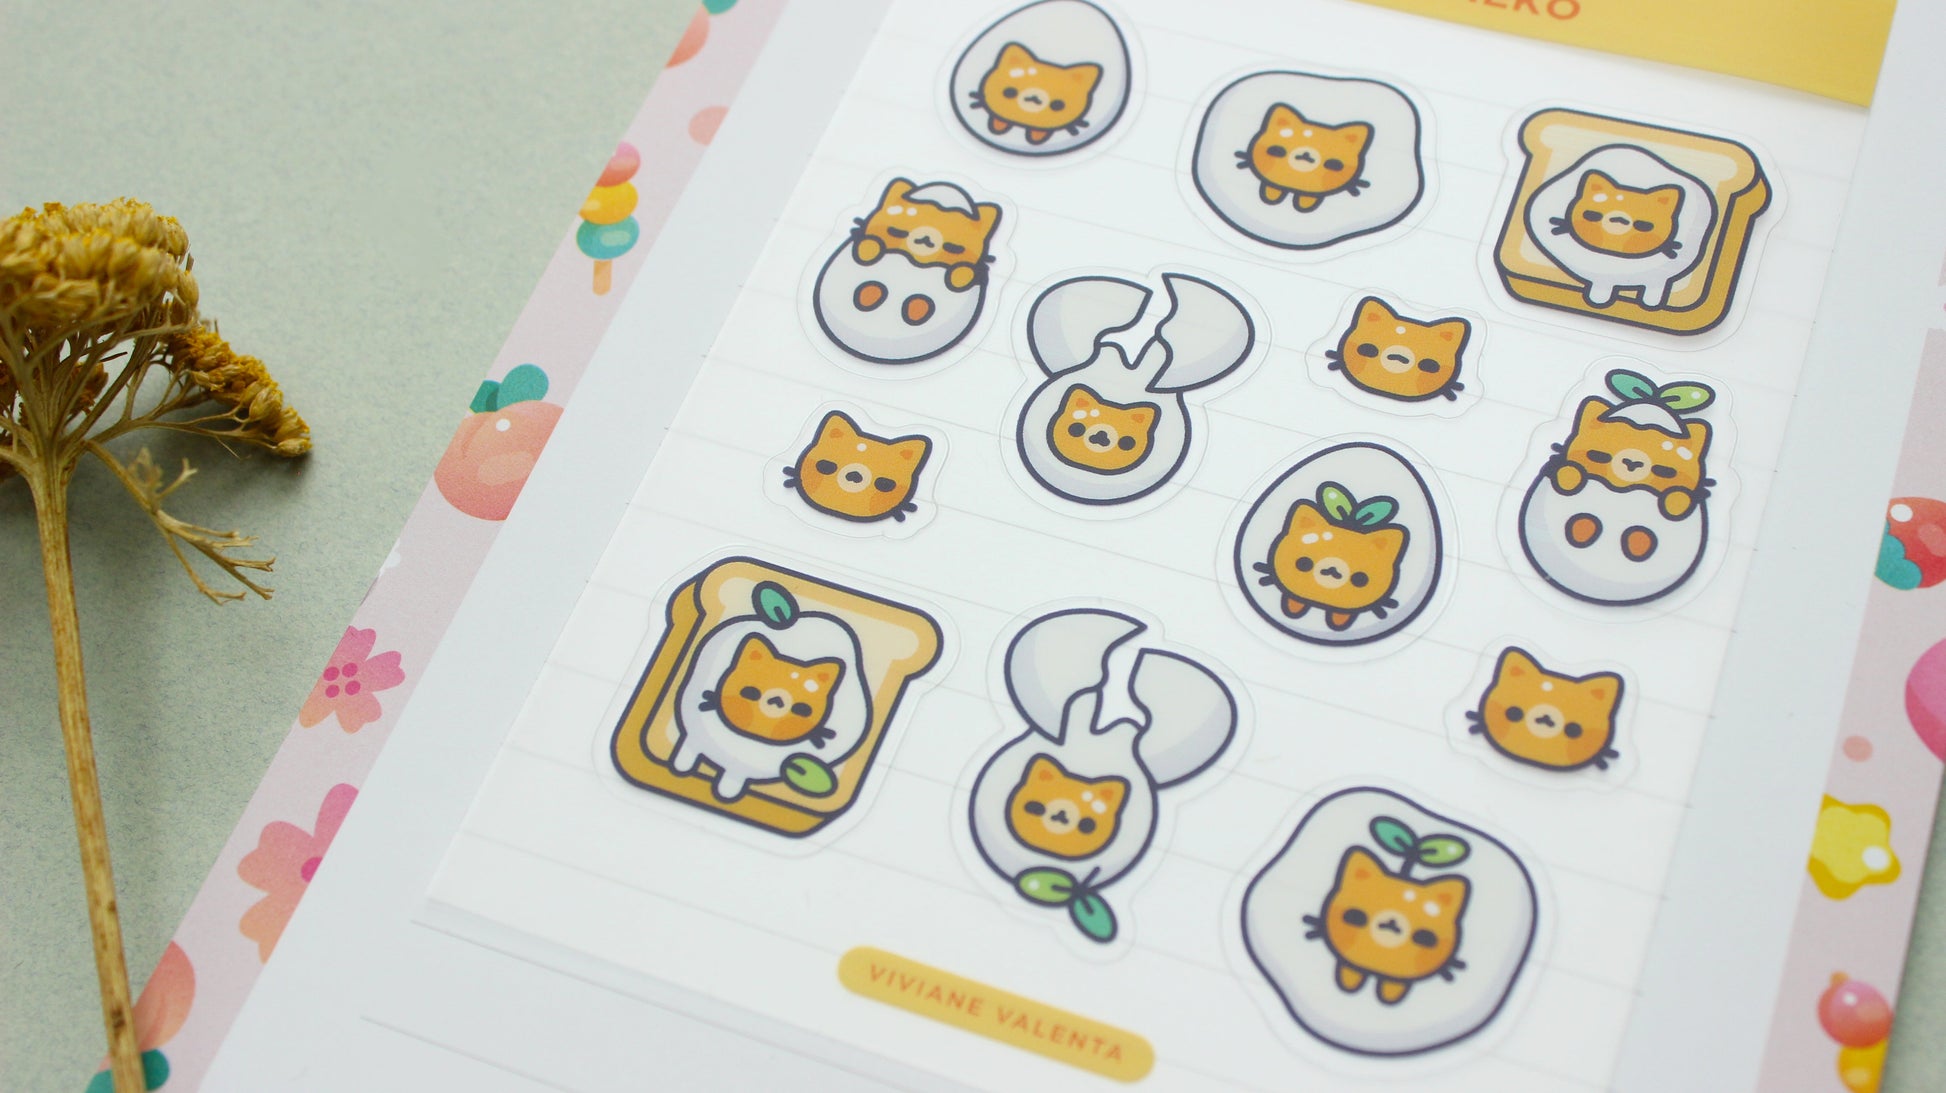 Tamago Neko Sticker Sheet | Japanese cute stickers | Journal Stickers, Planner Stickers - vivianevalenta